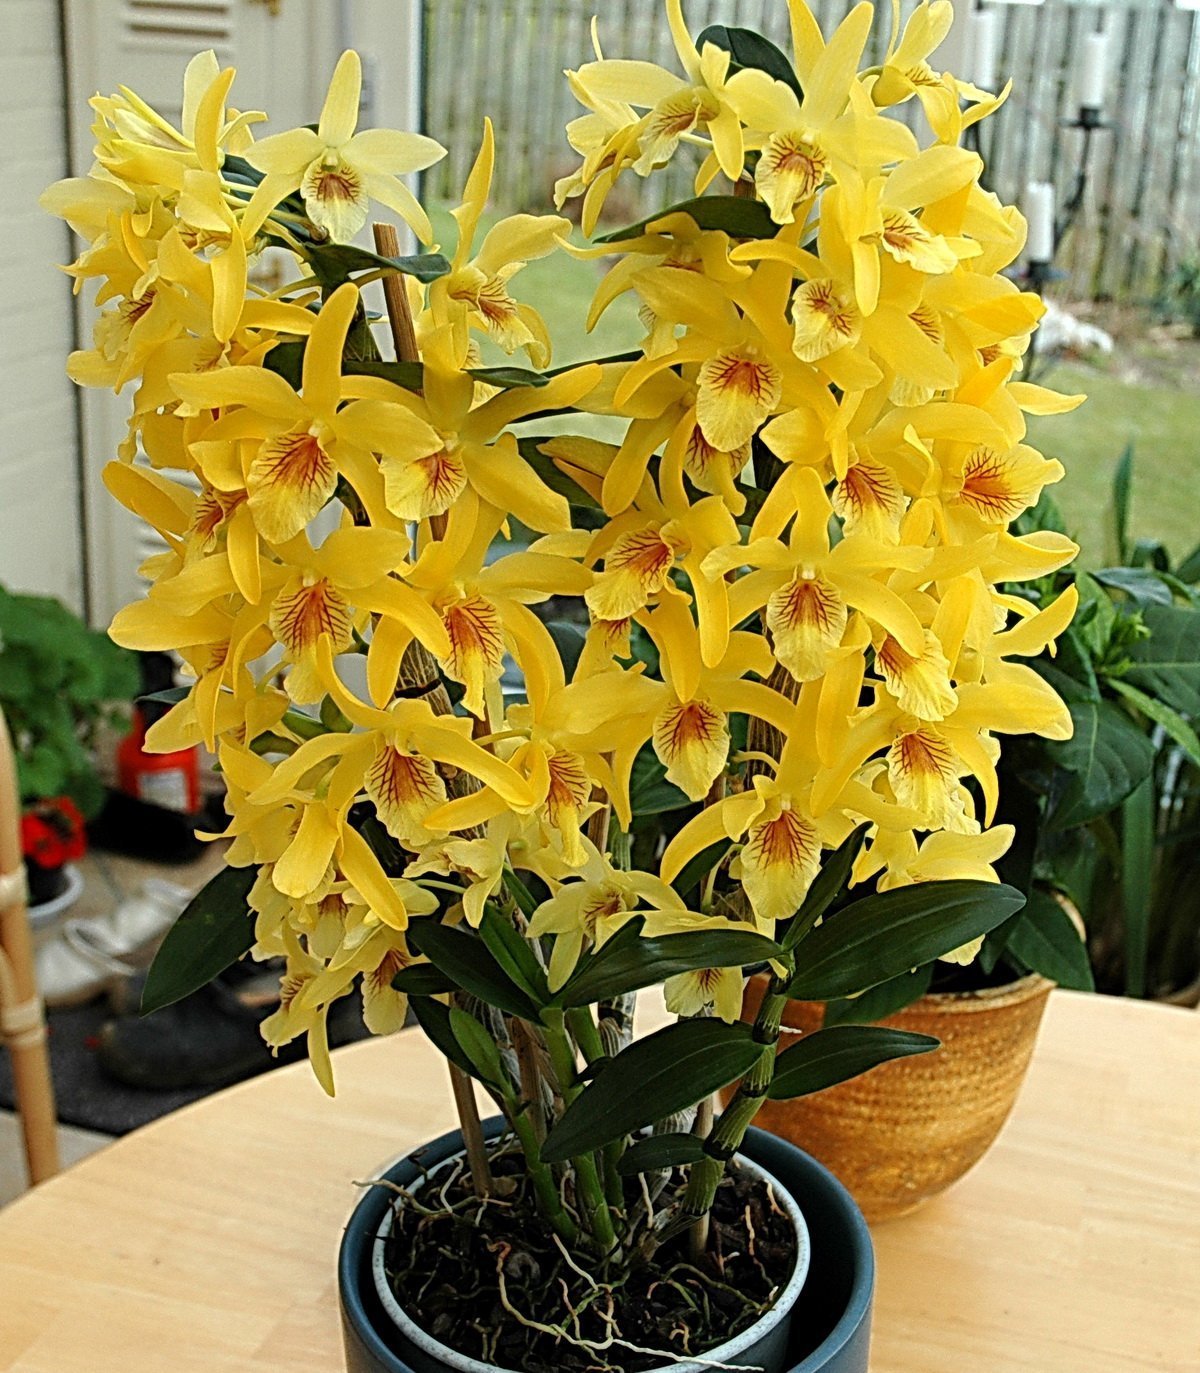 Орхидея Дендробиум Нобиле. Орхидея Dendrobium Nobile. Орхидея дегдробиум набухла. Цветок Dendrobium Nobile.